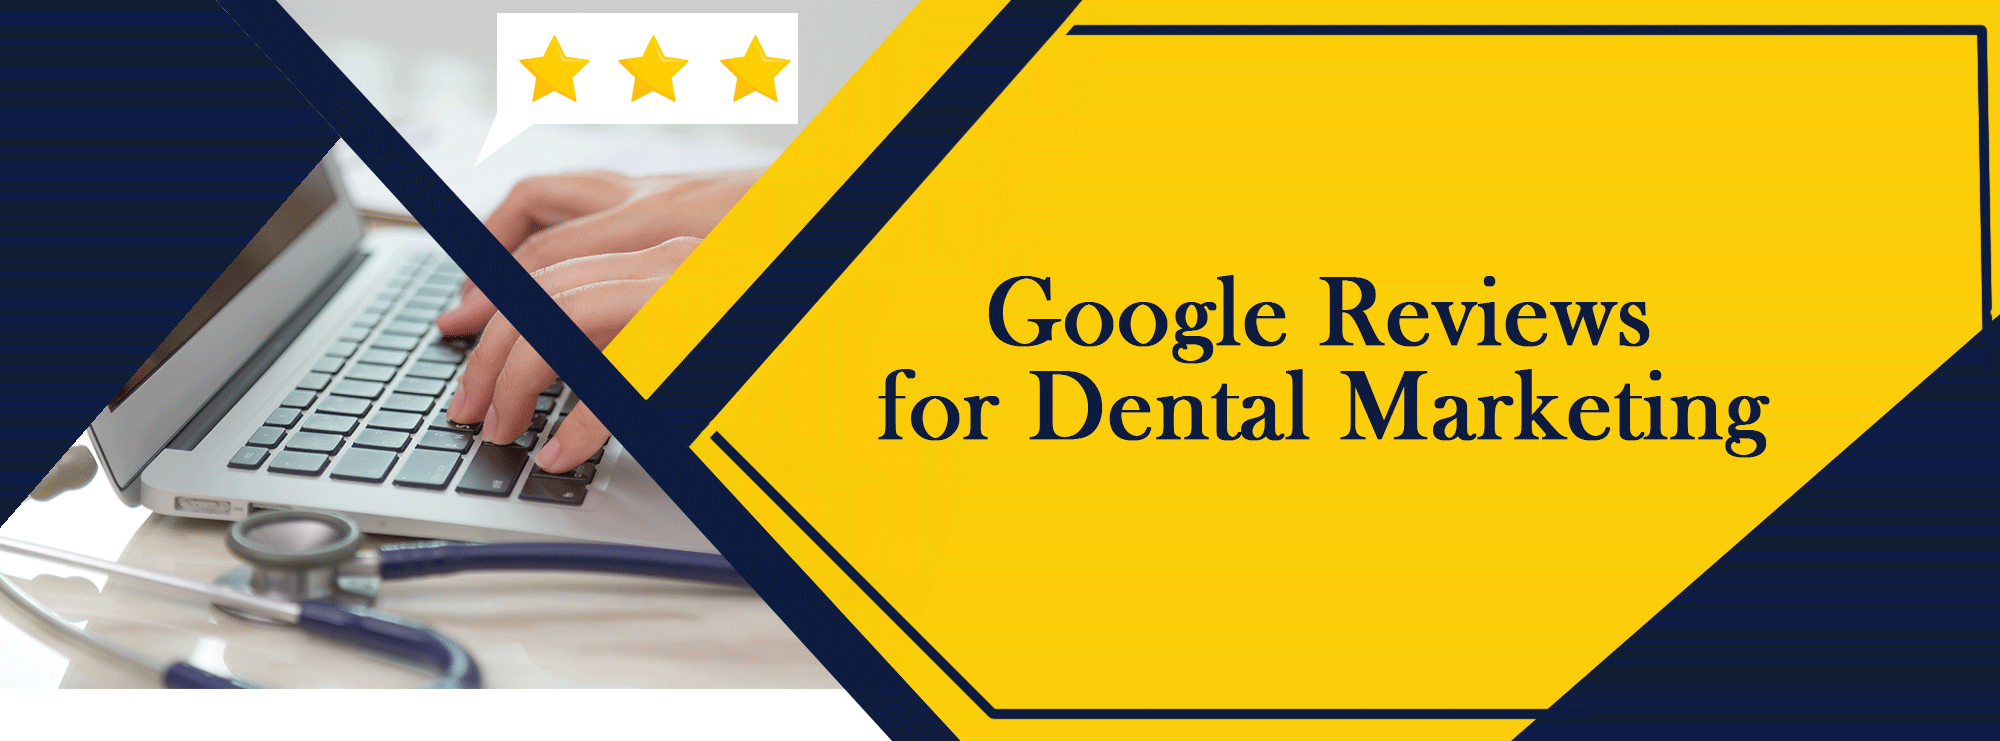 google-reviews-for-dental-marketing